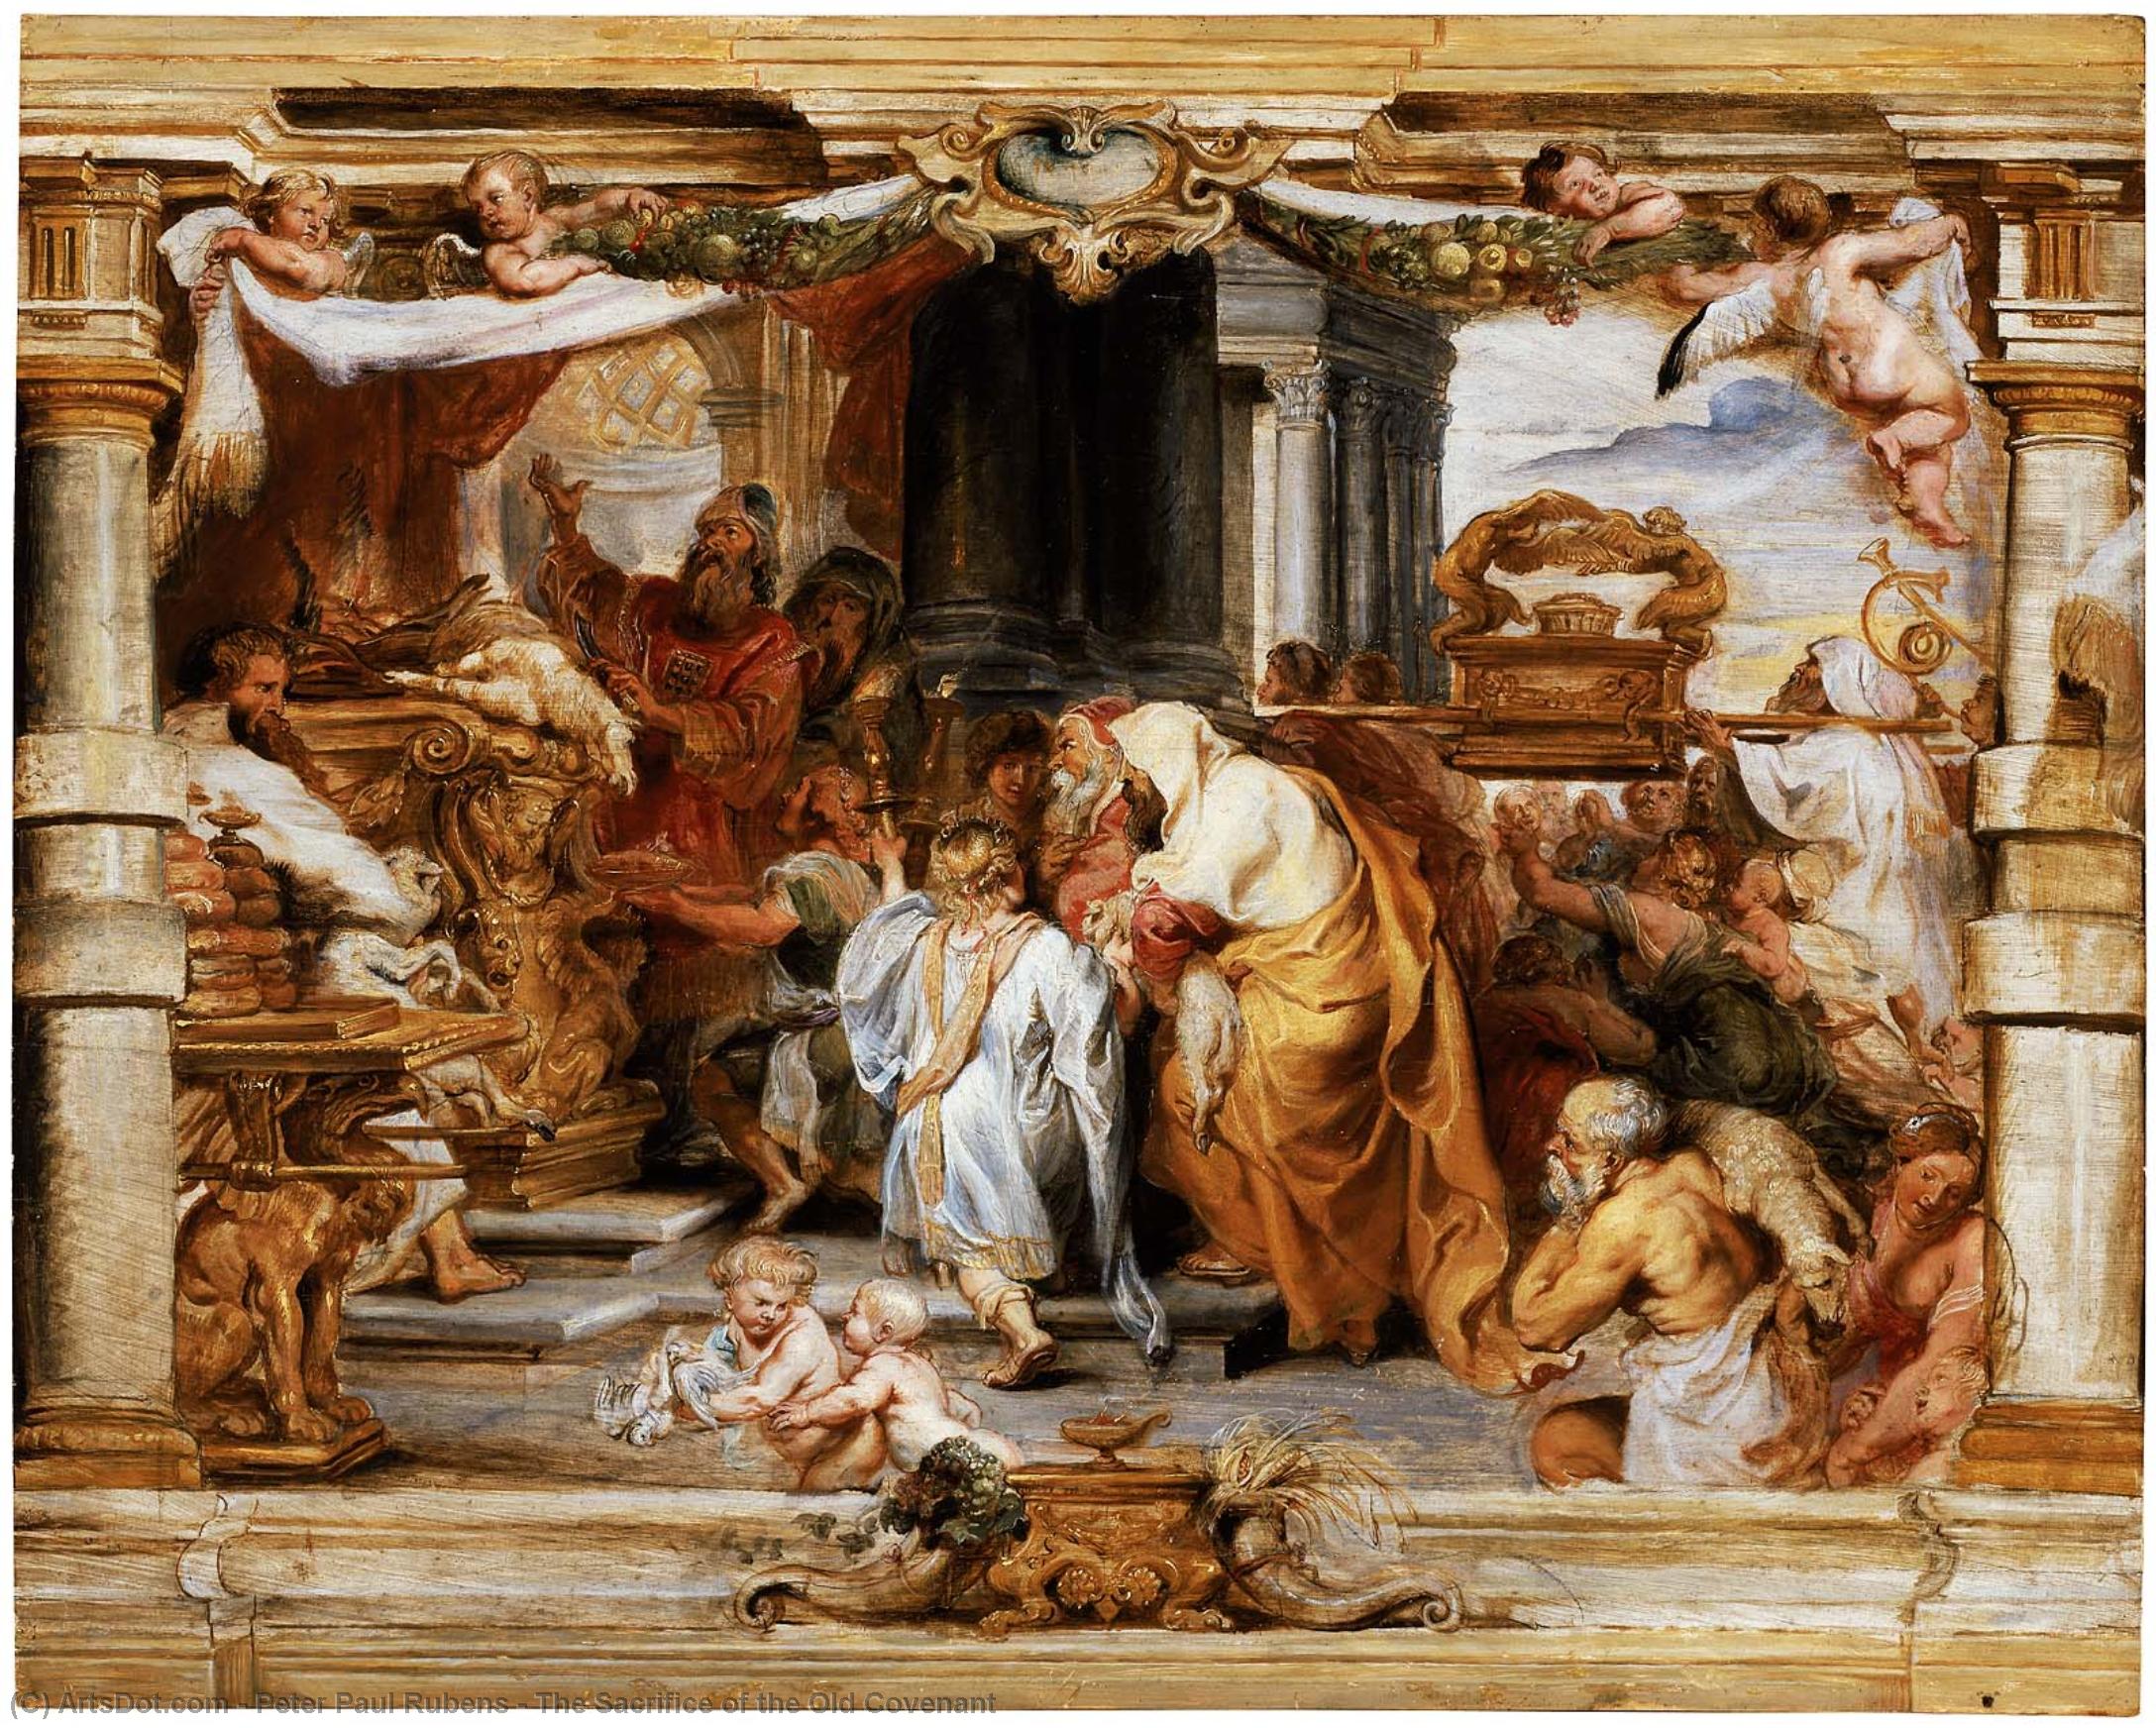 WikiOO.org - Енциклопедия за изящни изкуства - Живопис, Произведения на изкуството Peter Paul Rubens - The Sacrifice of the Old Covenant